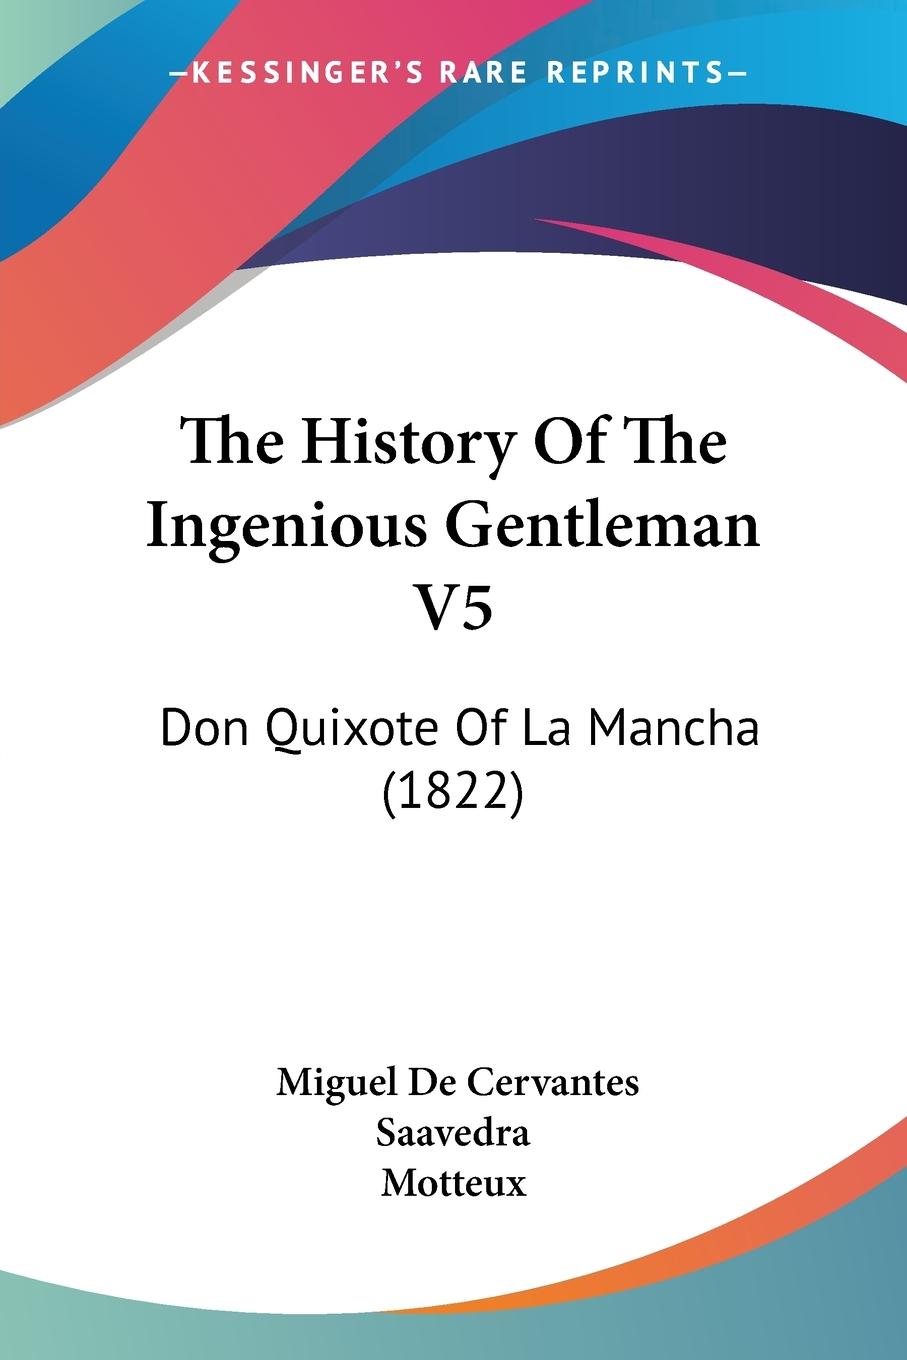 The History Of The Ingenious Gentleman V5 - Saavedra, Miguel De Cervantes